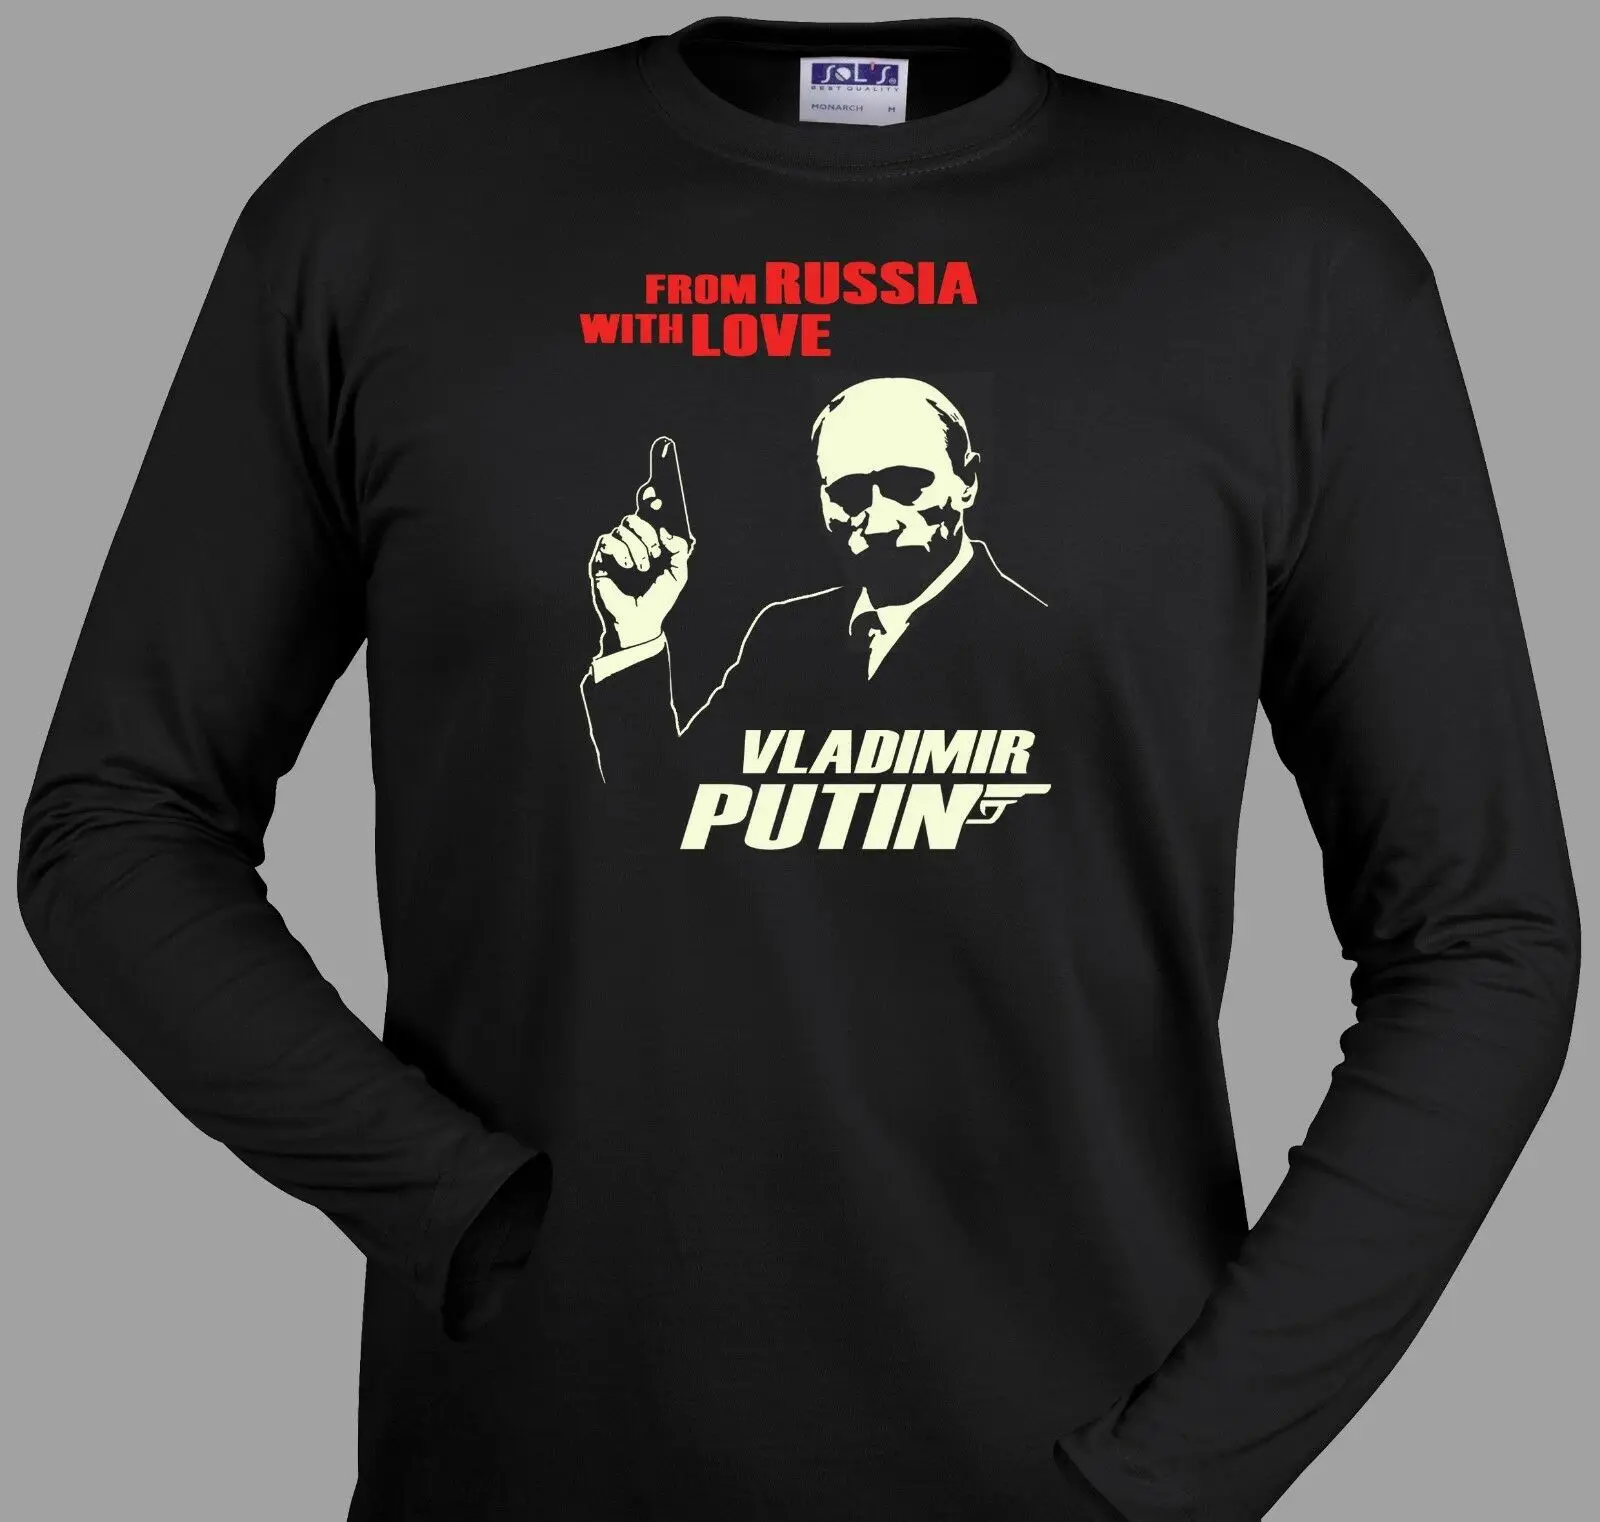 Футболка с Путиным, Россия, James Bond 007, черная футболка с серебряным принтом, S-5XL